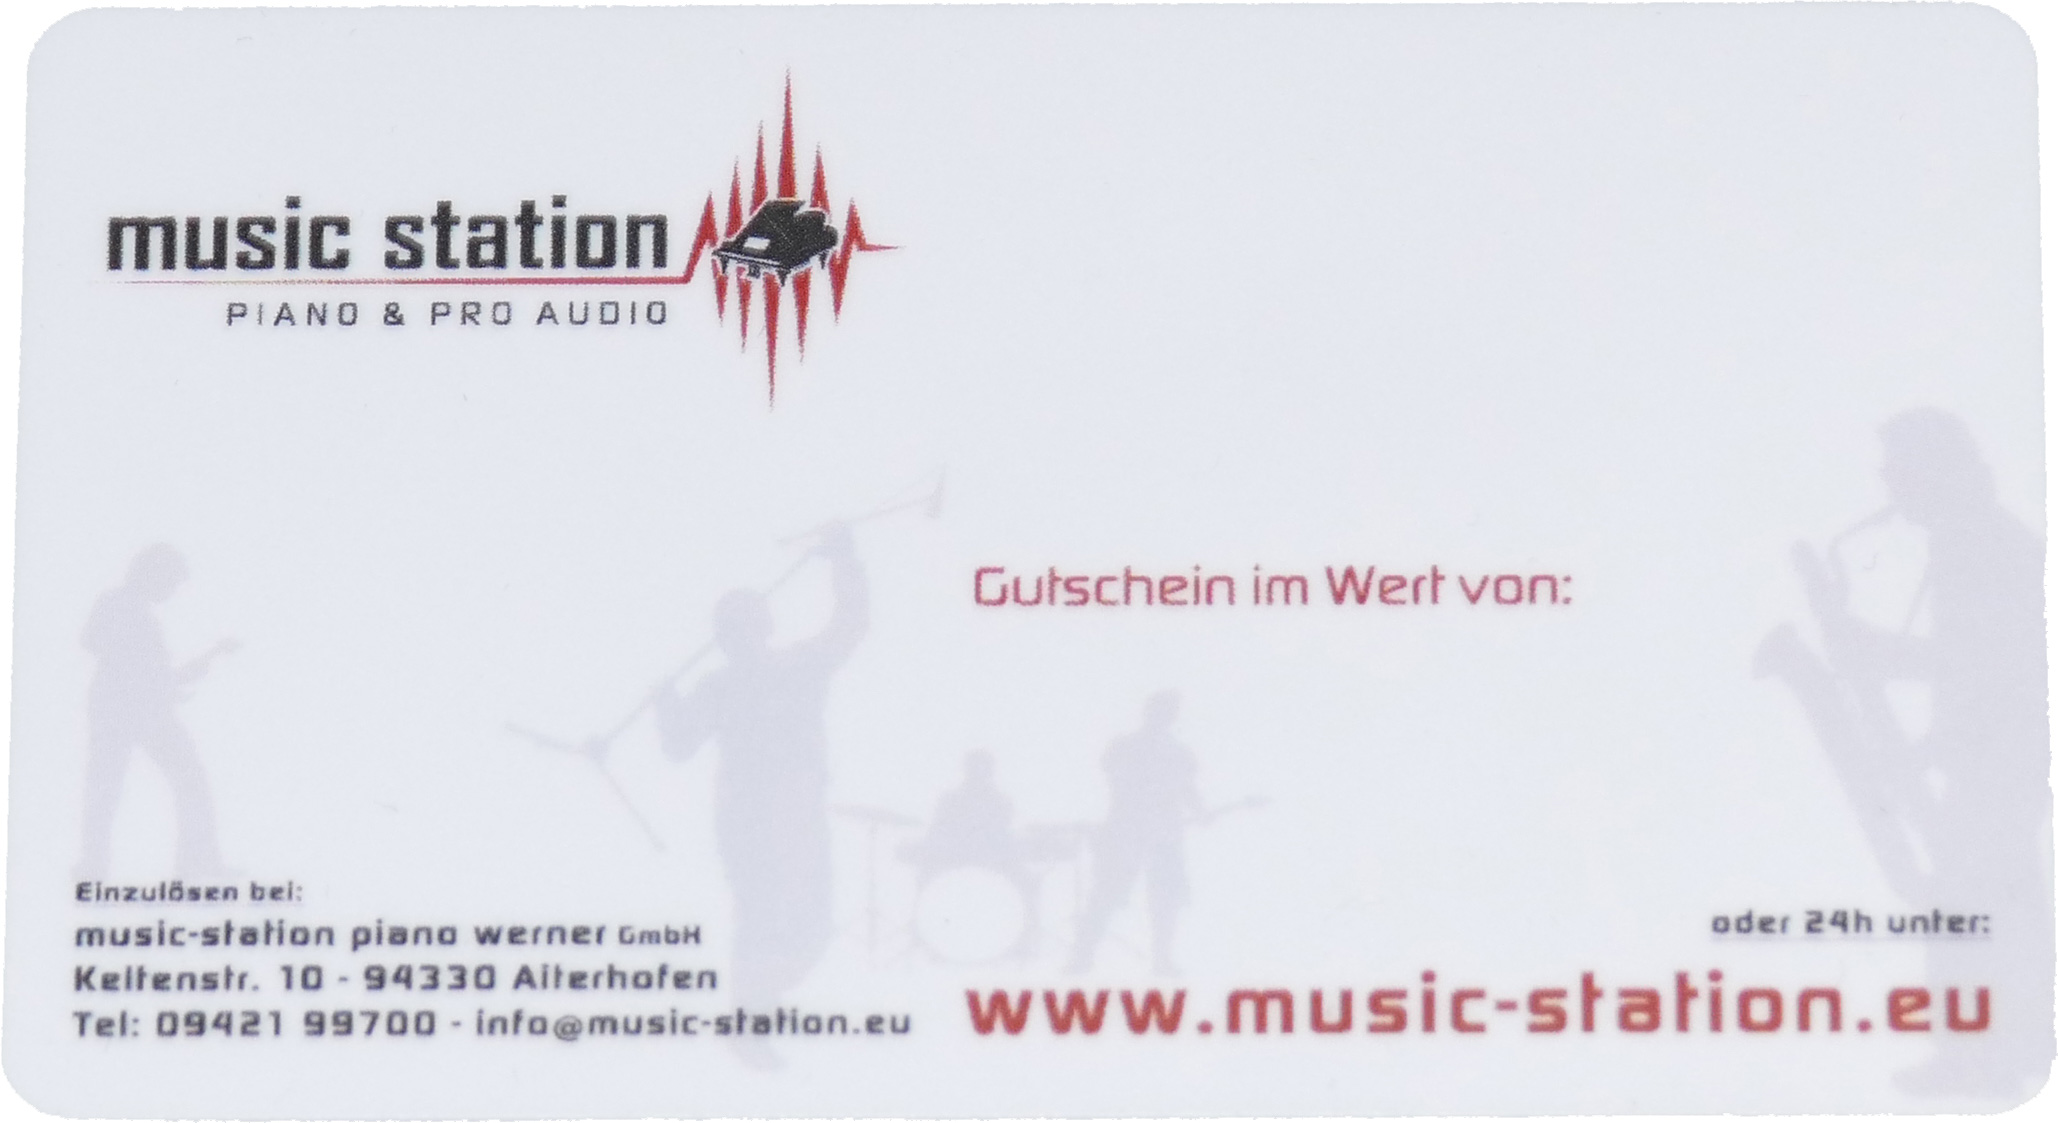 Music Station Gutschein 100 Euro